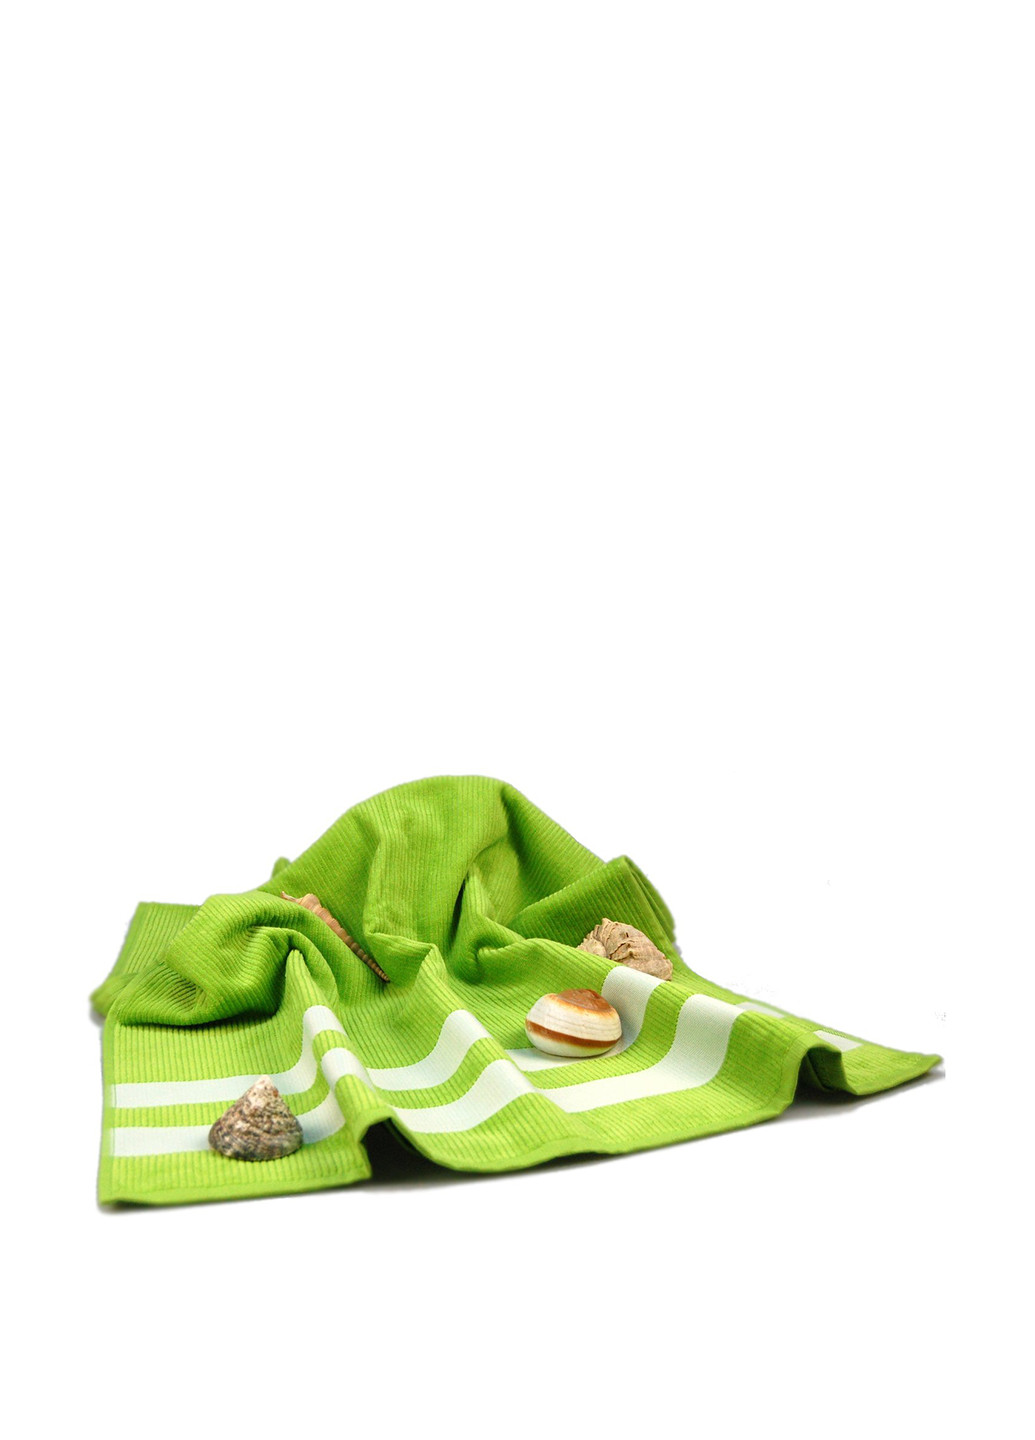 Home Line полотенце, 70х150 см зеленый производство - Турция